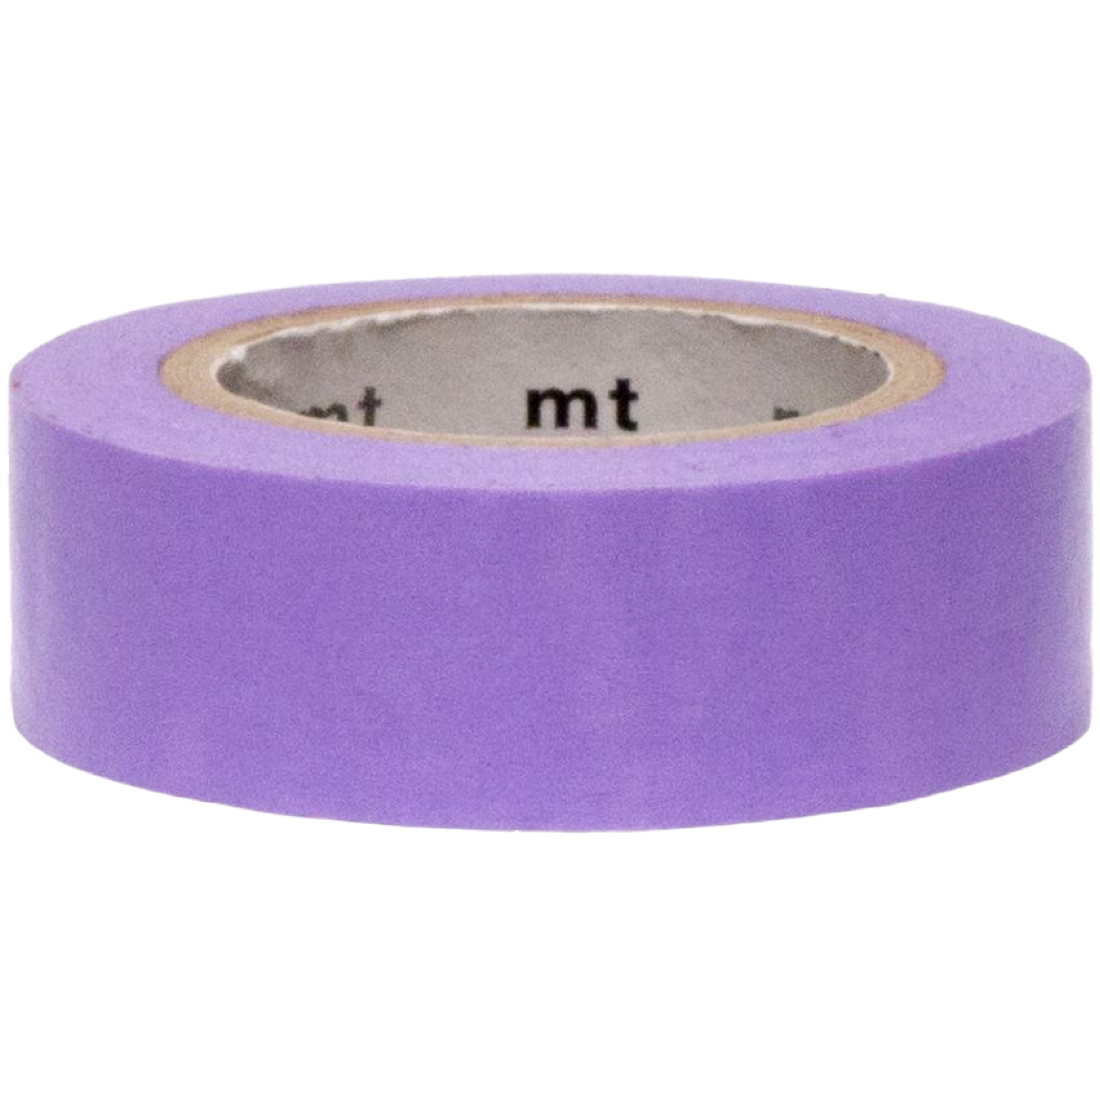 Washi Tape Lavender MT01D186Z mt masking tape